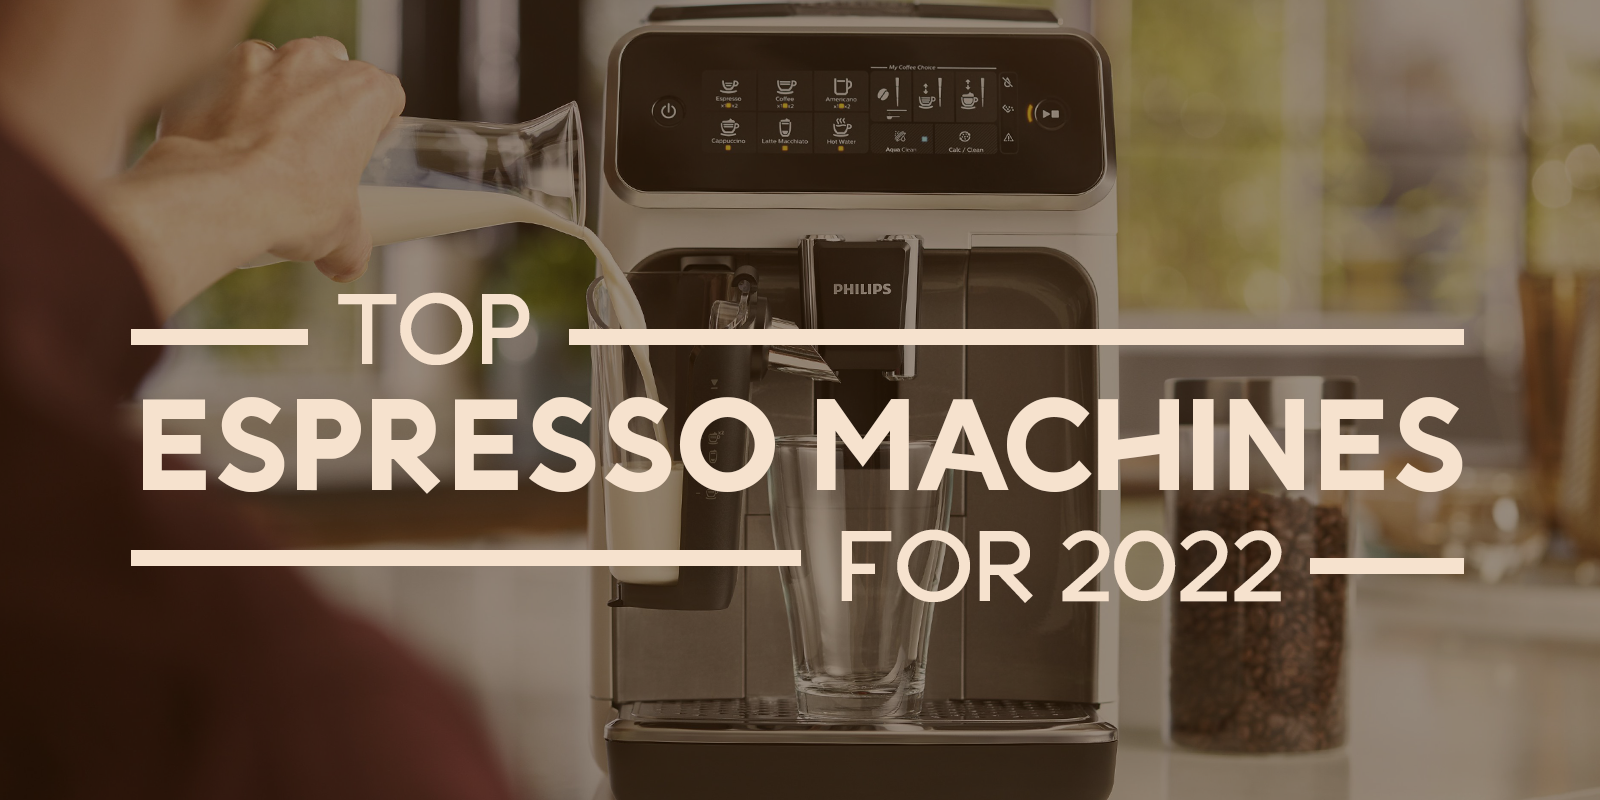 2021 POPULAR IN MARKET super automatic /big touch screen espresso